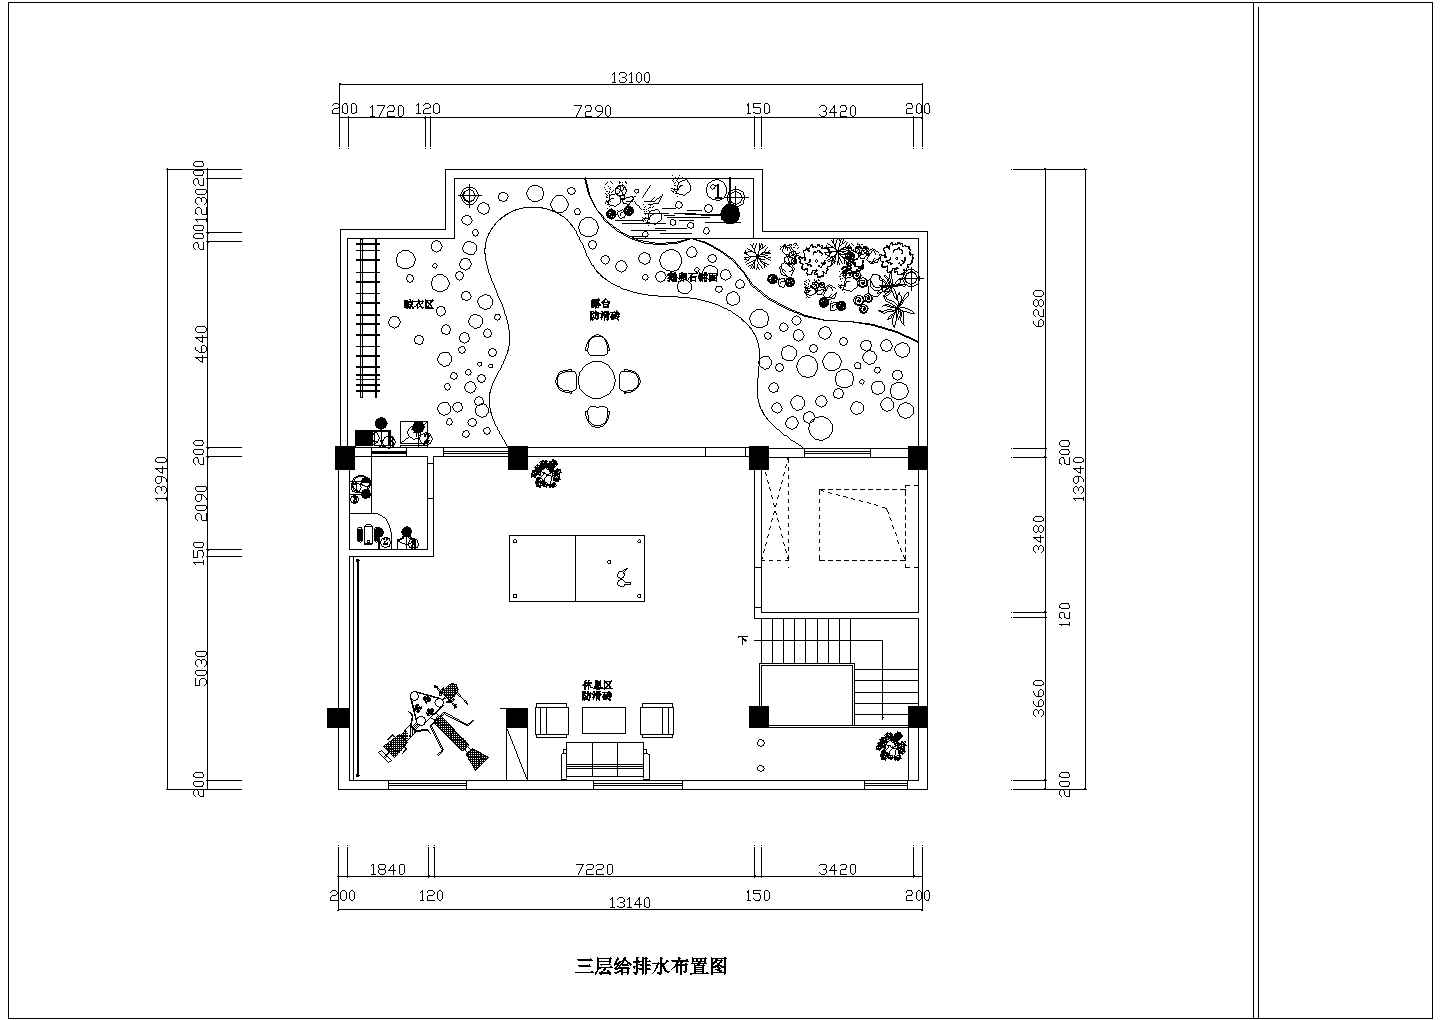 【苏州】某小村新型家居公司全体装修设计方案图